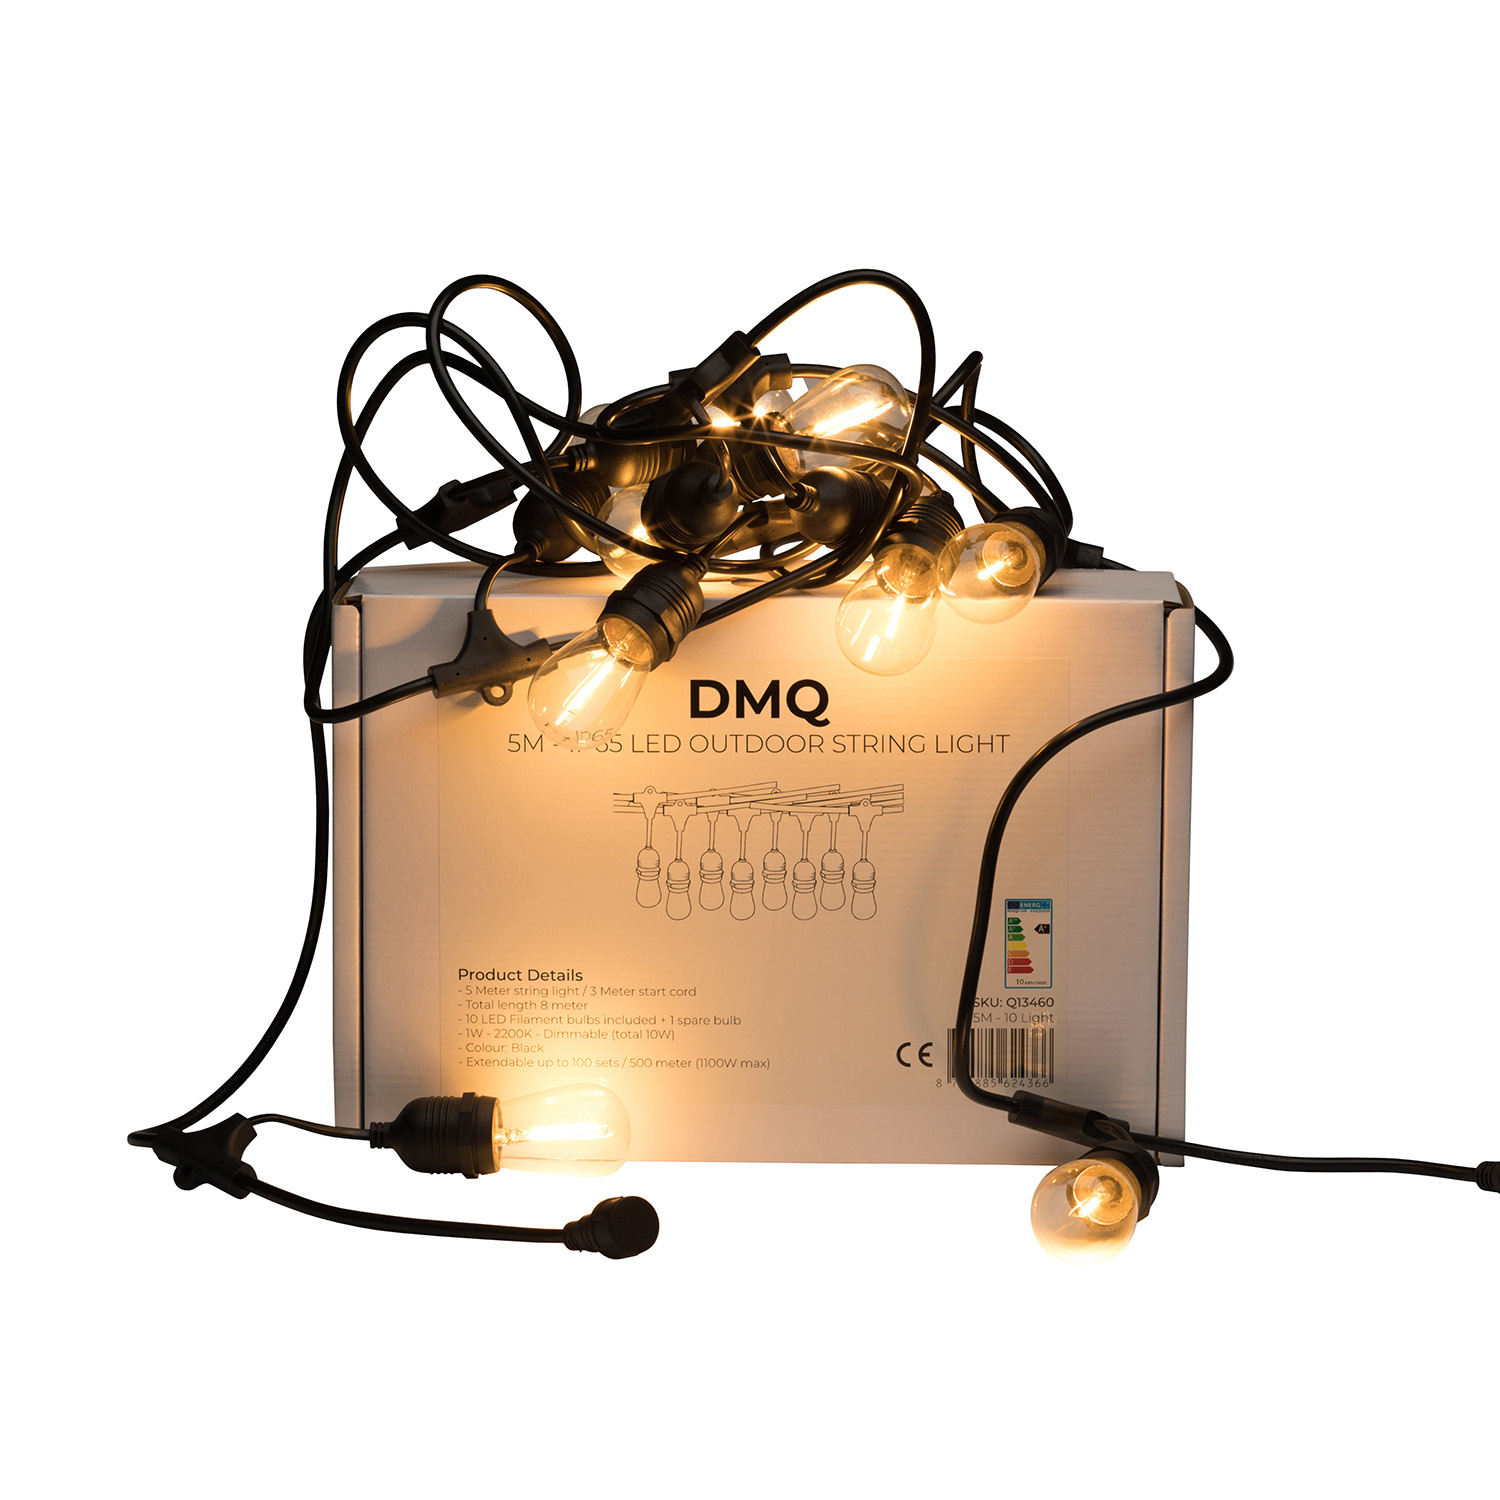 Sluiting Vestiging bijkeuken DMQ Koppelbaar Lichtsnoer Prikkabel - 10M - 10 LED lampen - Waterdicht - DMQ